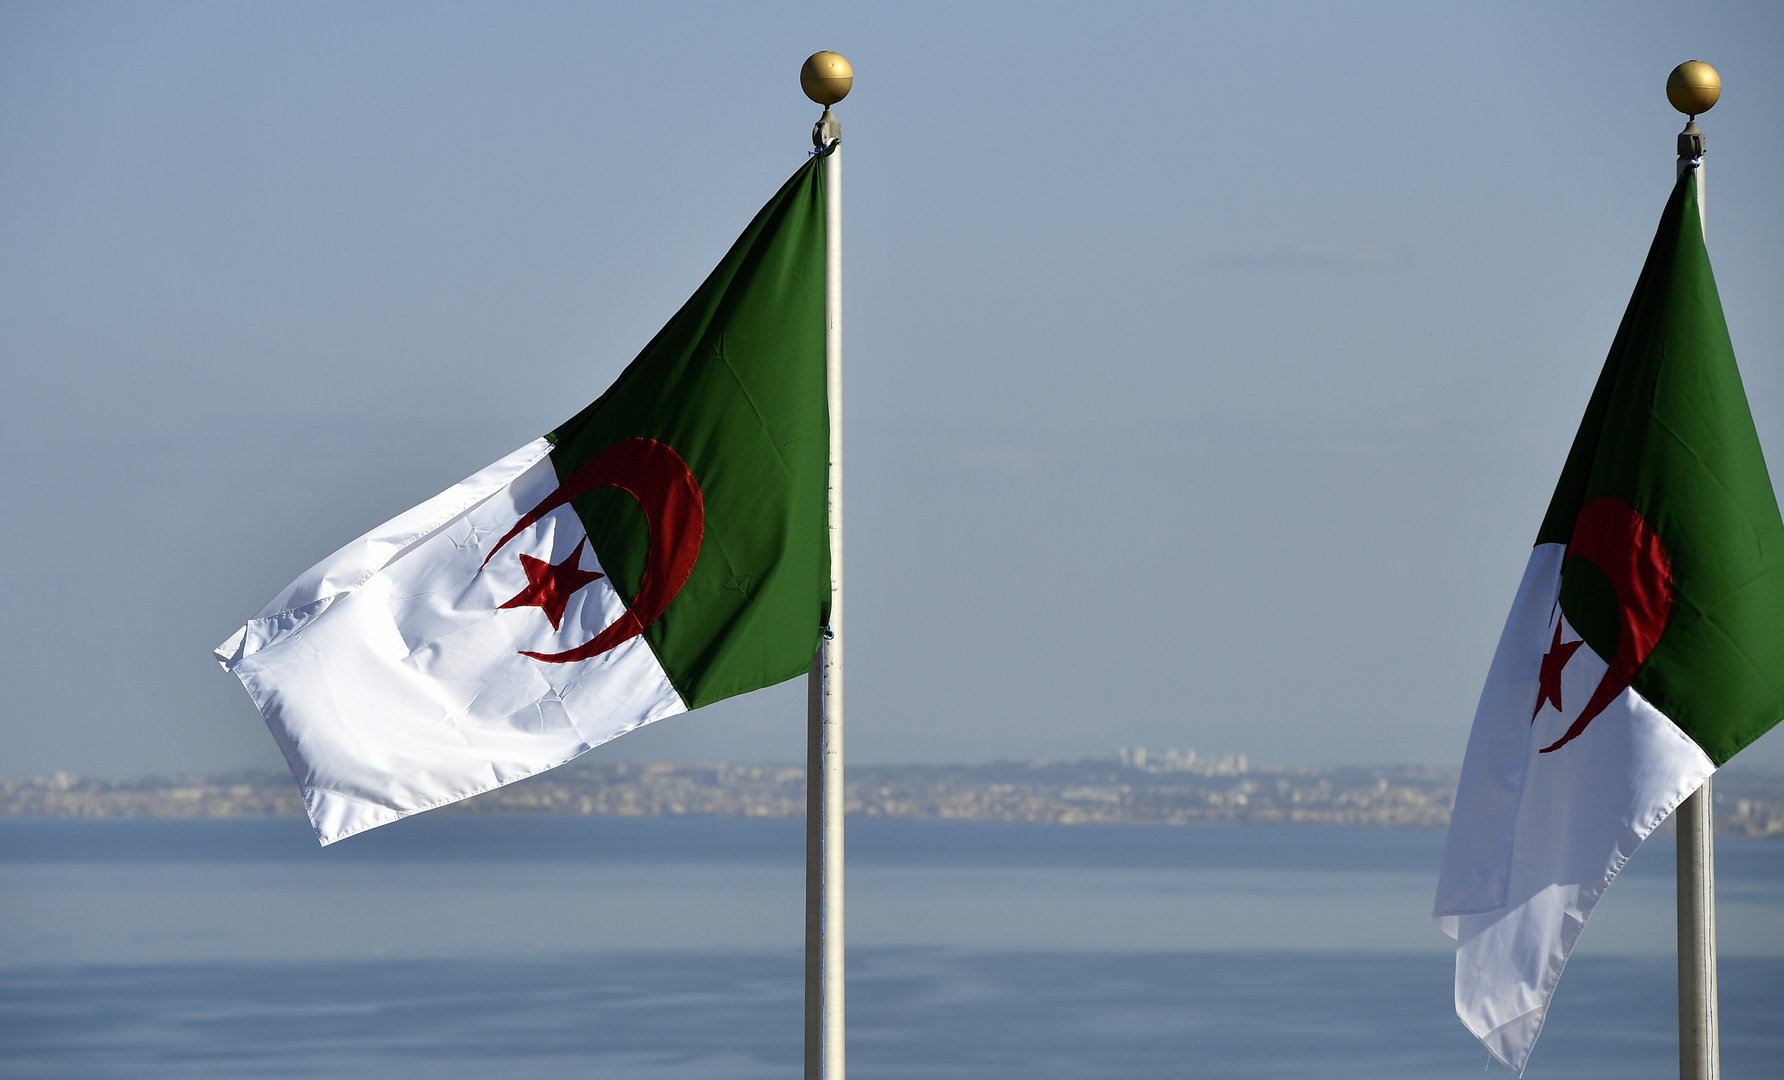 الرئيس الجزائري يقرر تنكيس علم البلاد ثلاثة أيام حدادا على وفاة بوتفليقة